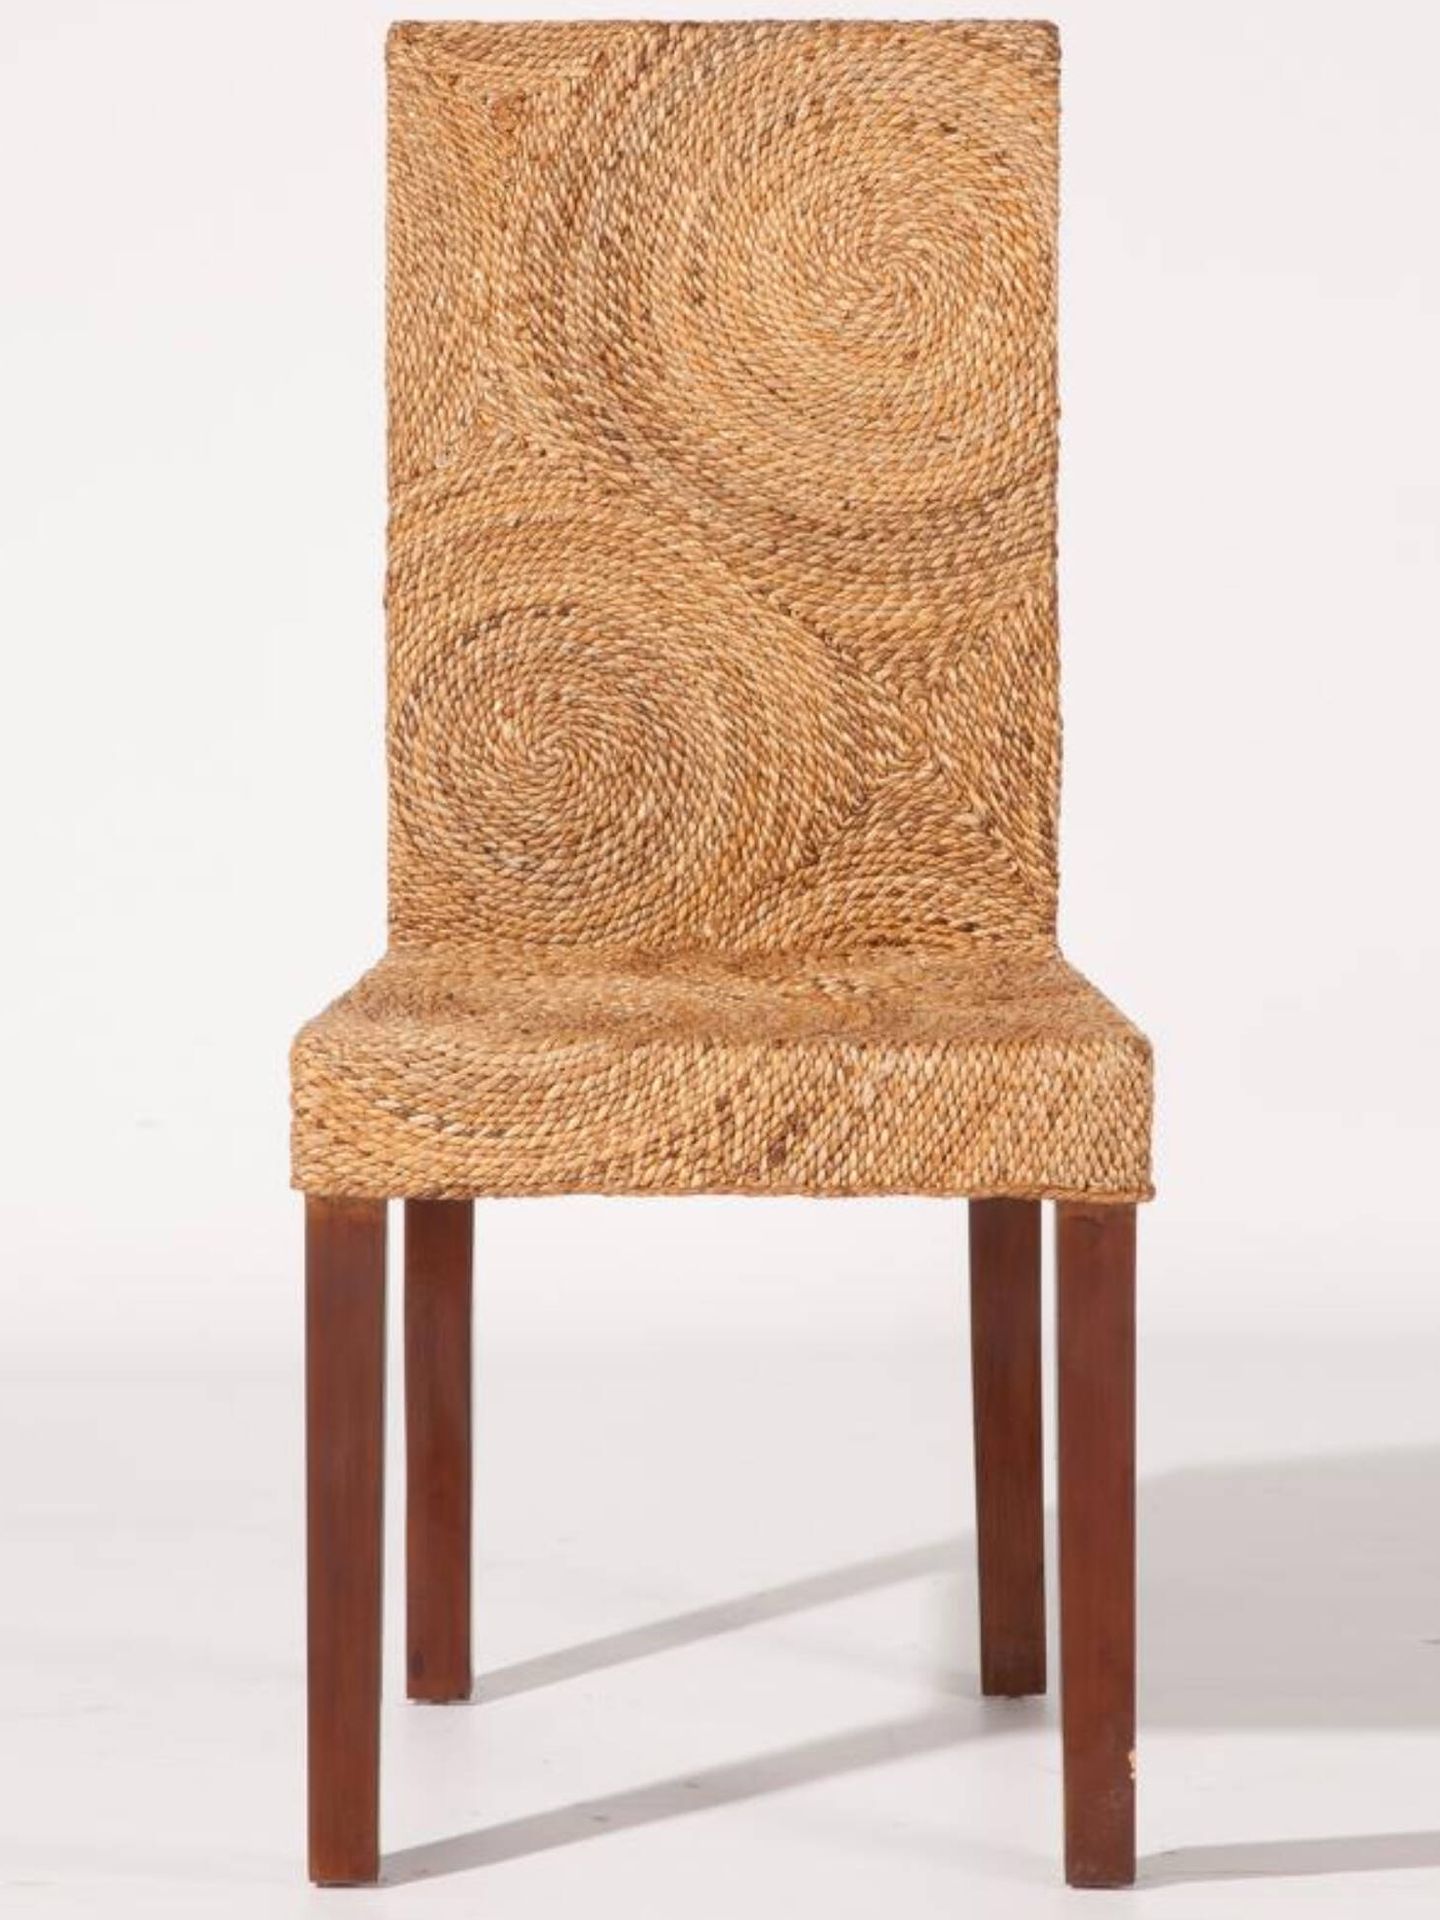 Descubre la silla de Banak con tejido natural. (Cortesía)